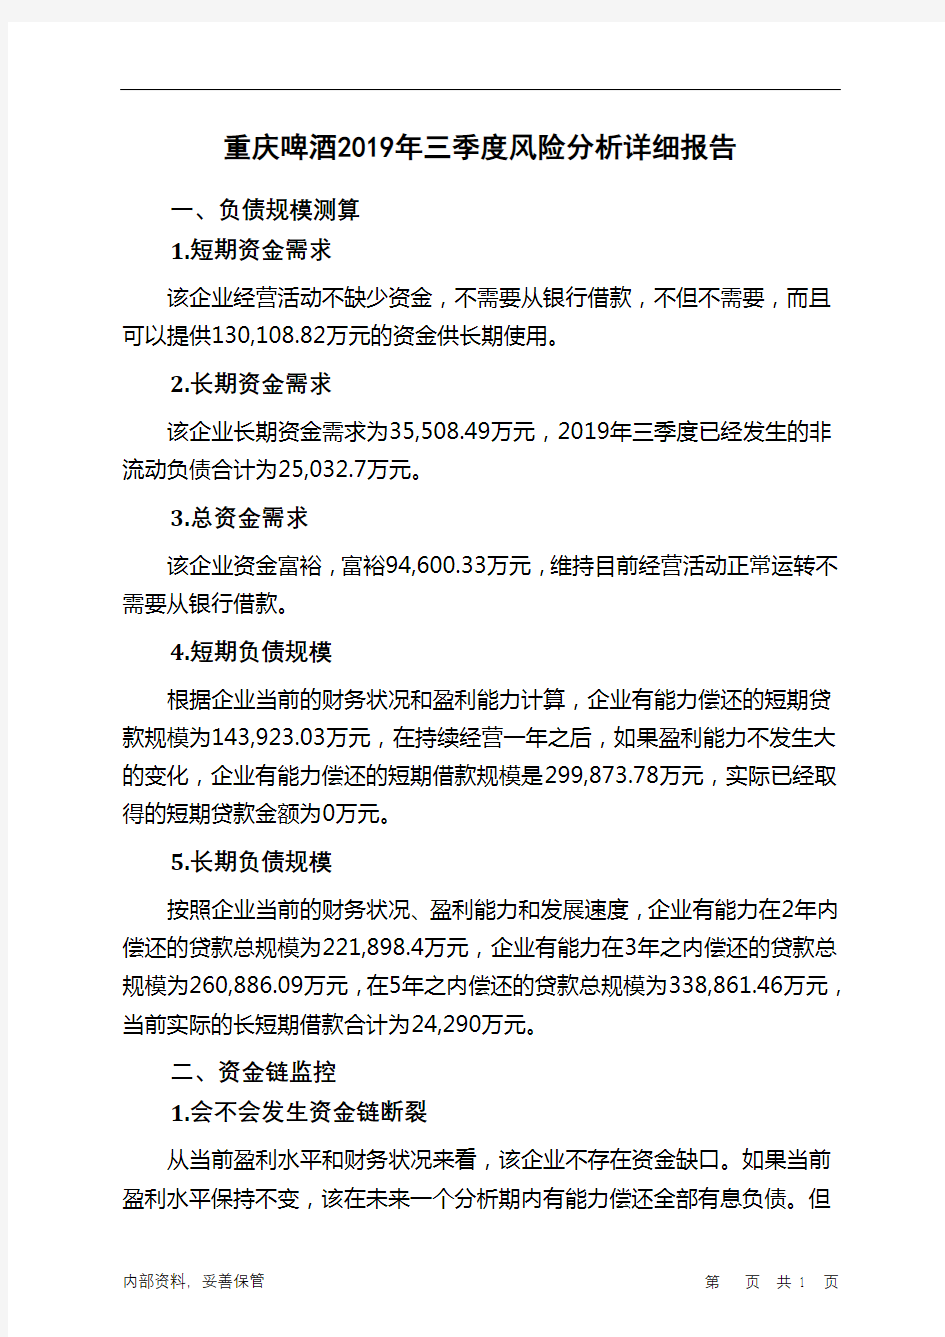 重庆啤酒2019年三季度财务风险分析详细报告